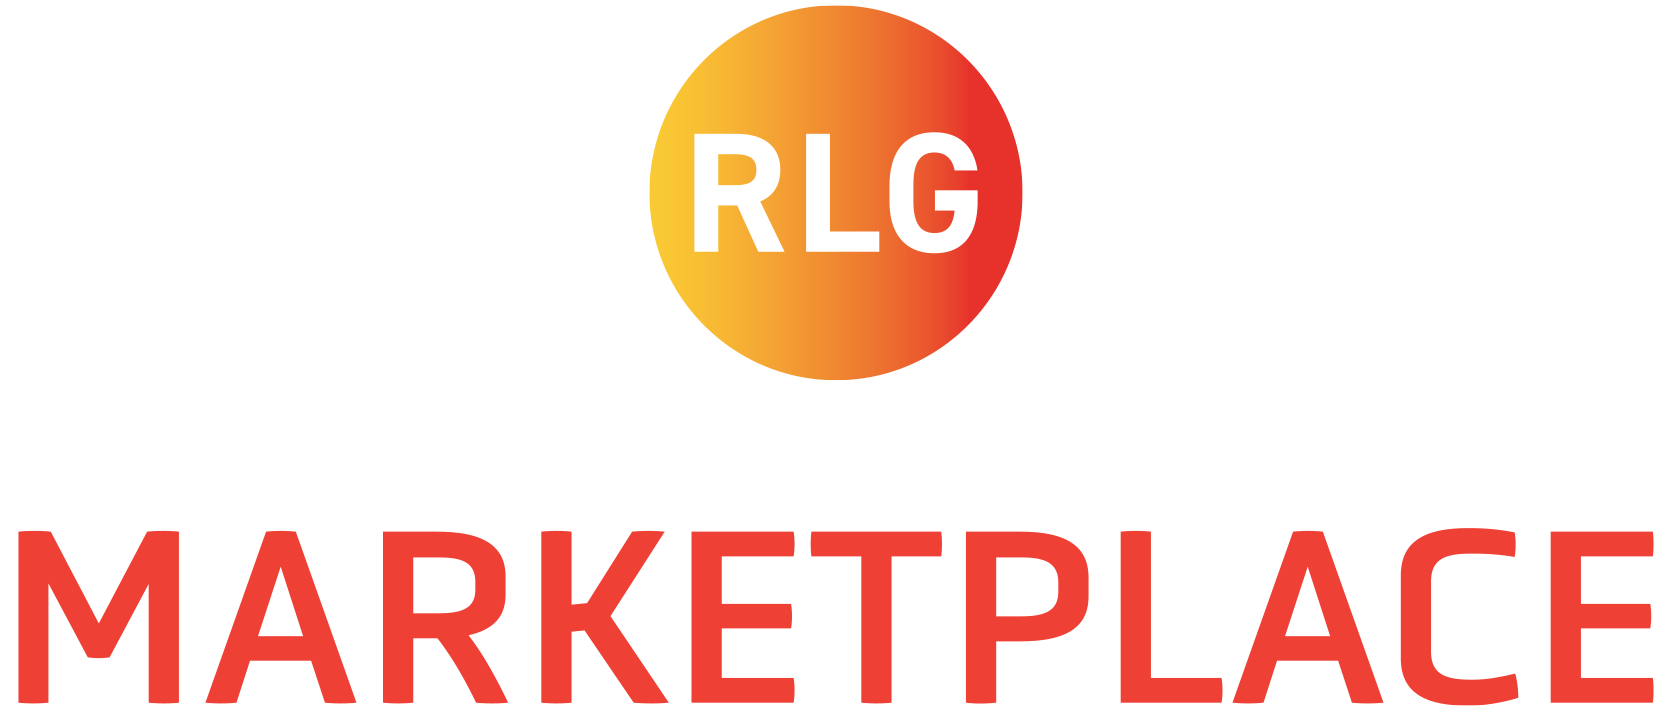 RLG MARKETPLACE Logo